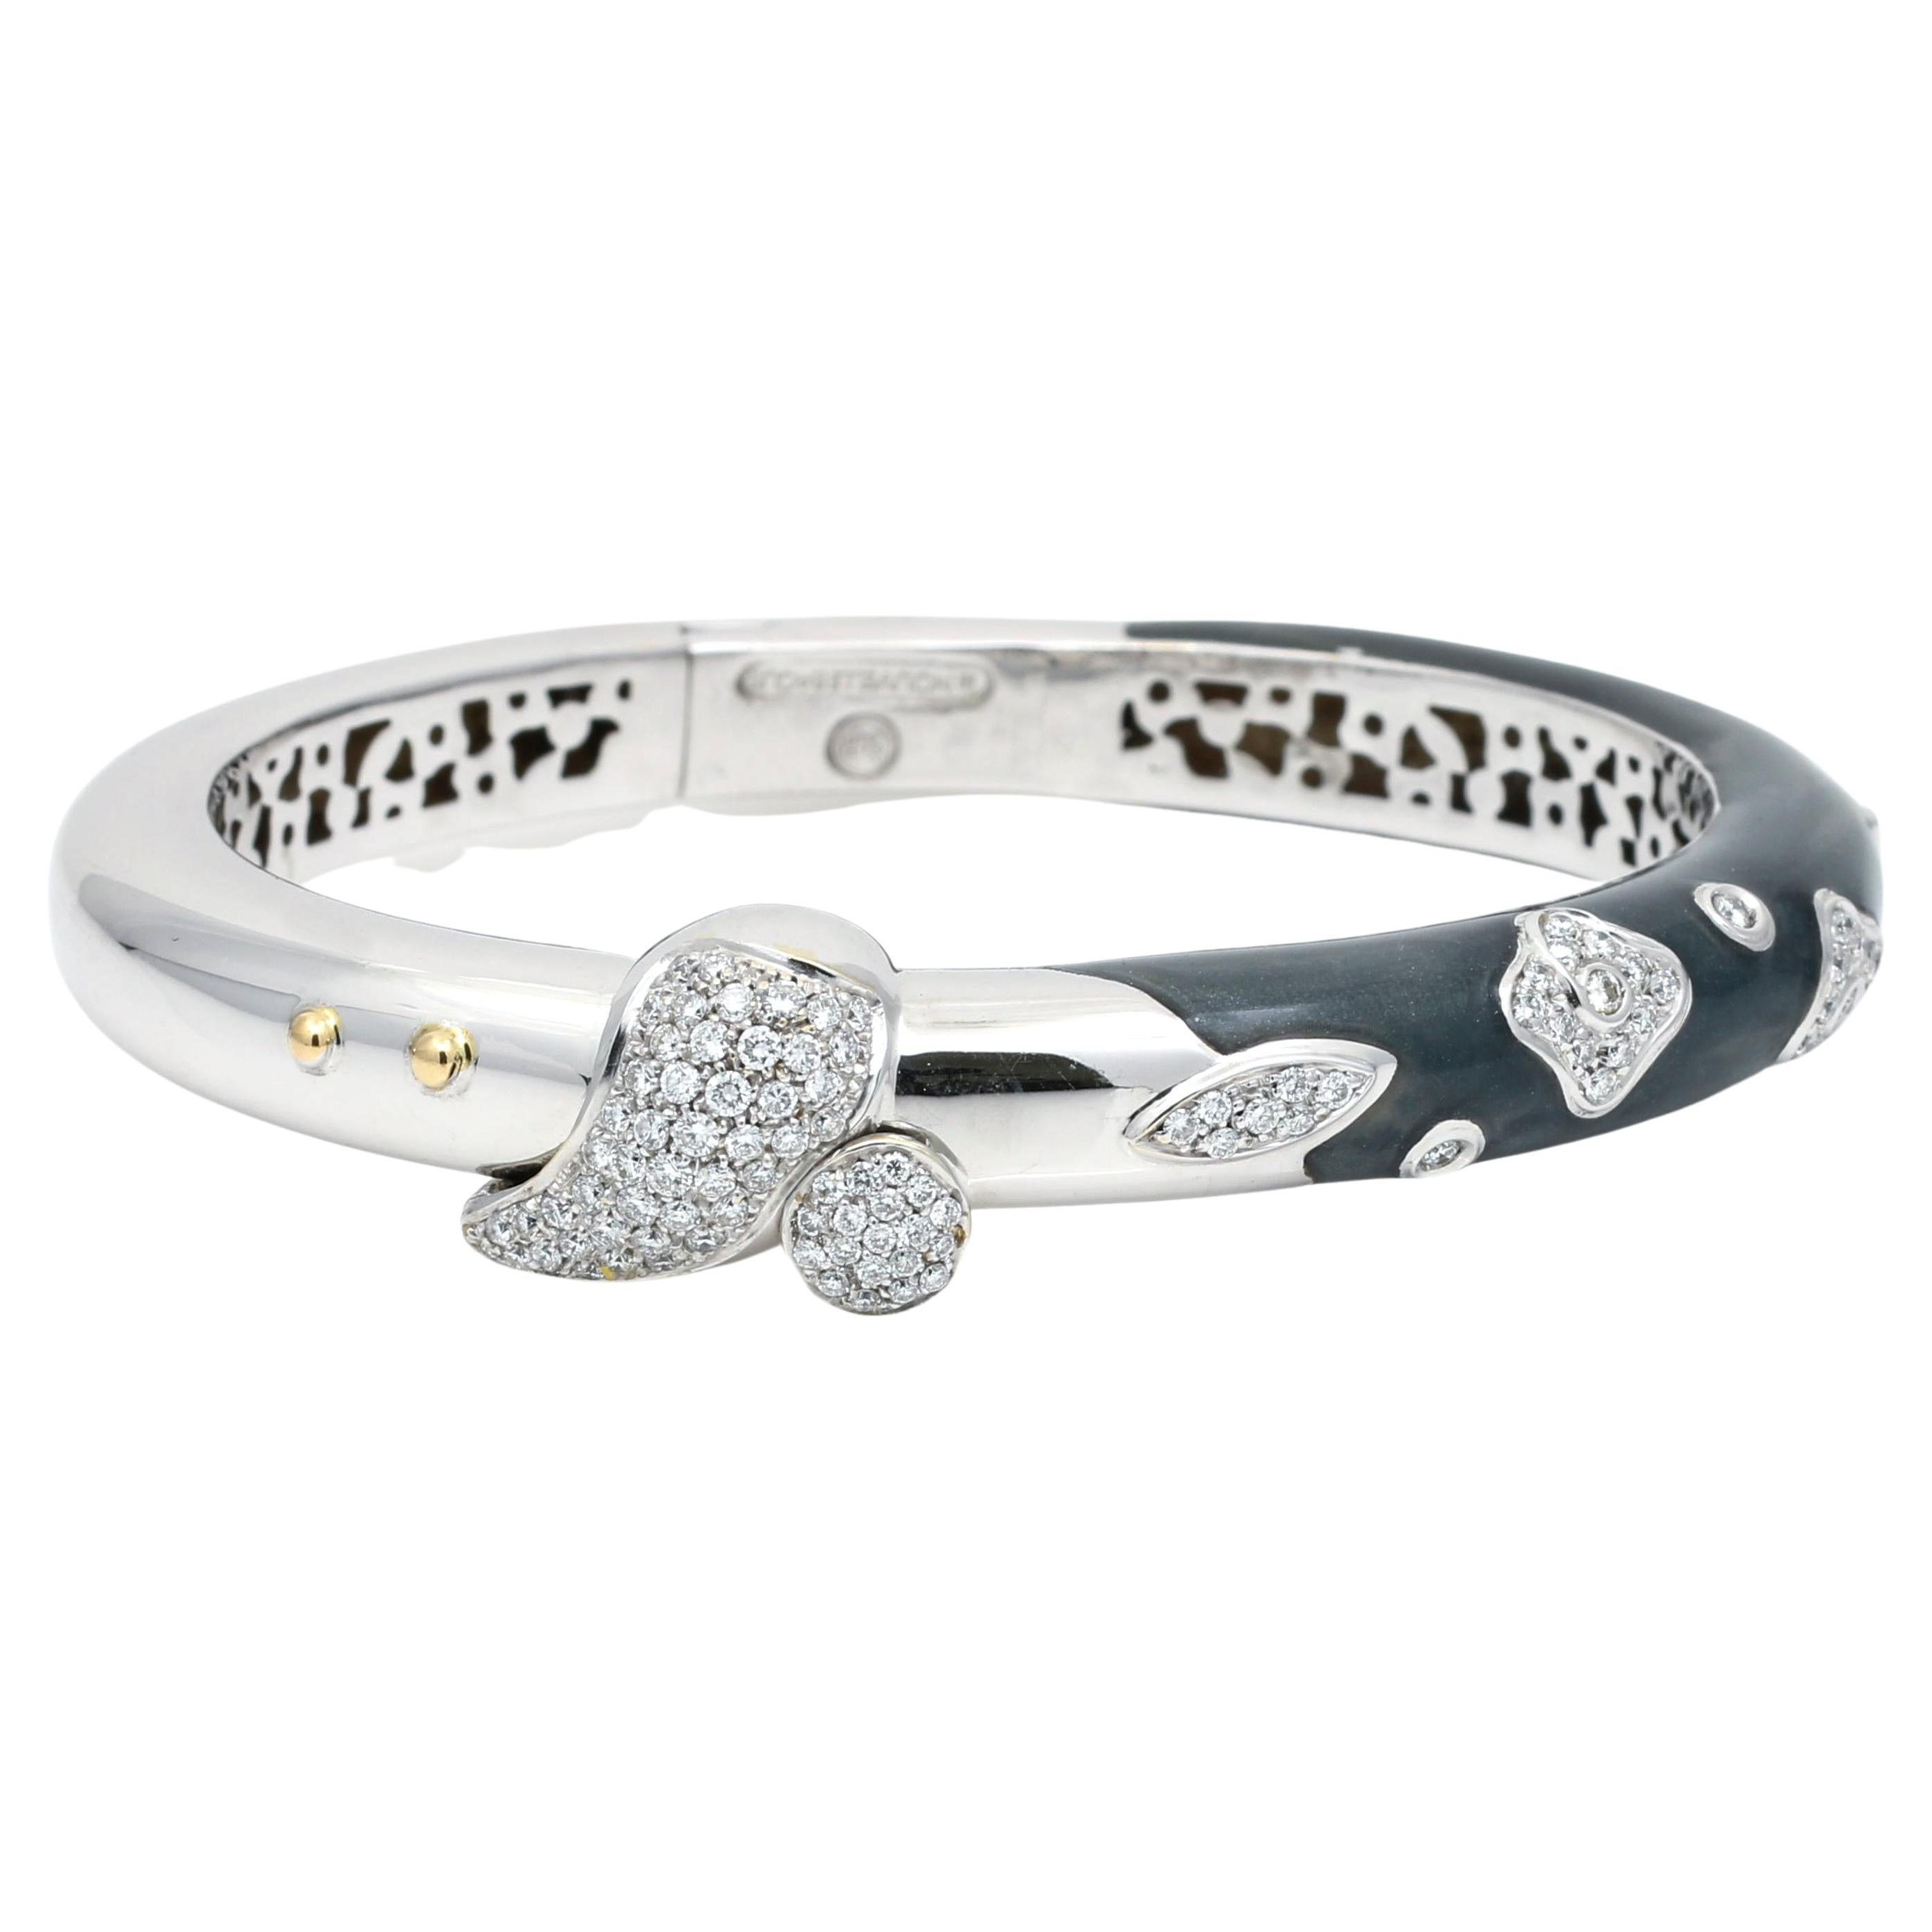 La Nouvelle Bague Diamond 18k White Gold Bangle Bracelet Grey Enamel